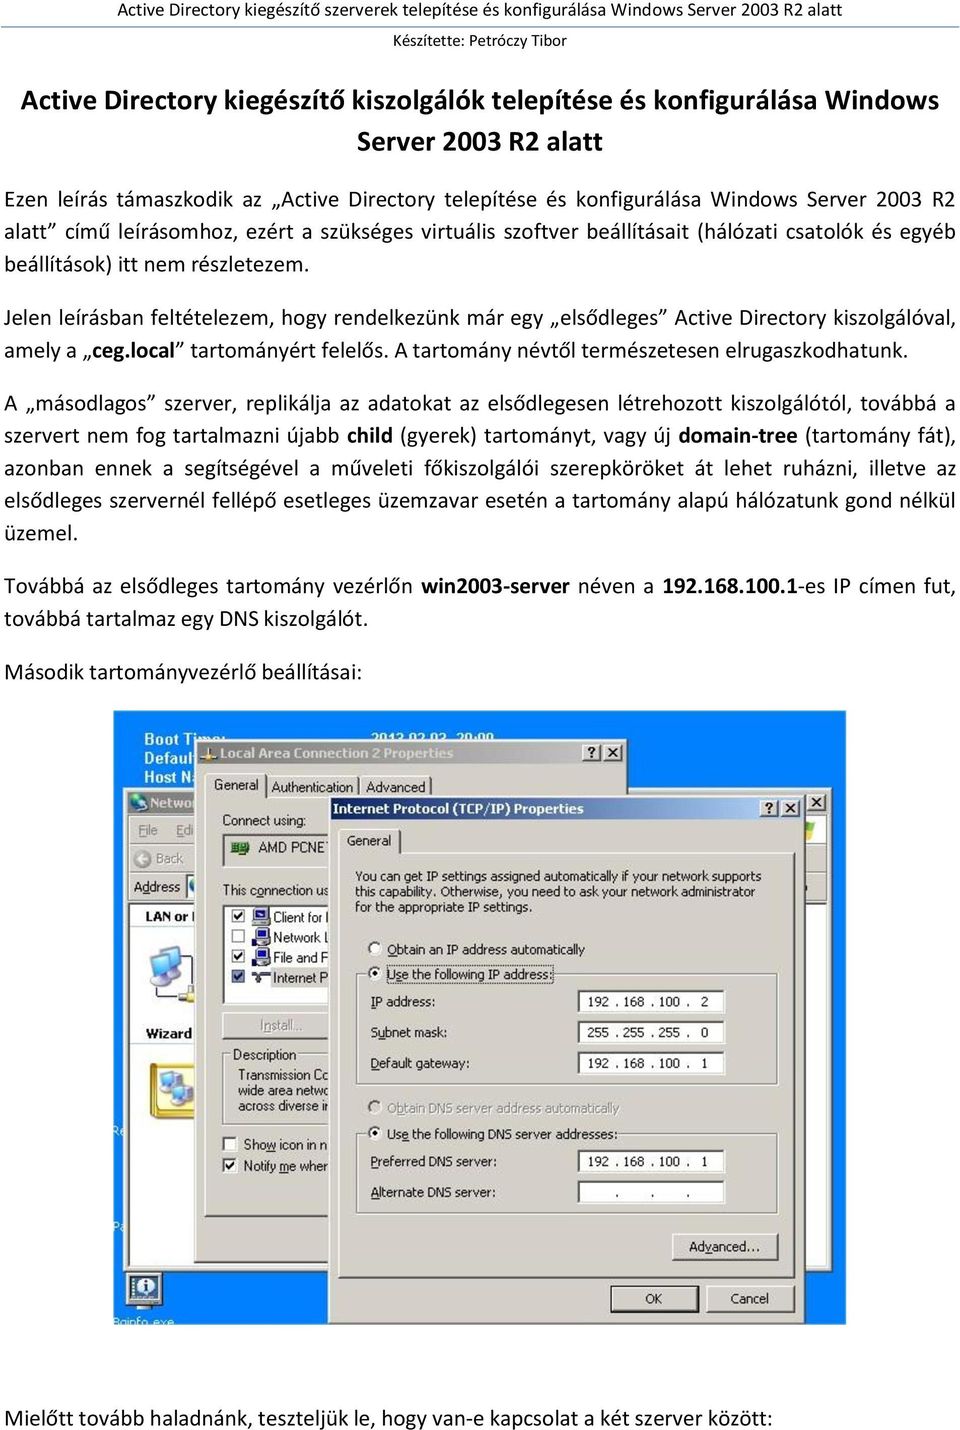 Active Directory kiegészítő kiszolgálók telepítése és konfigurálása Windows  Server 2003 R2 alatt - PDF Free Download